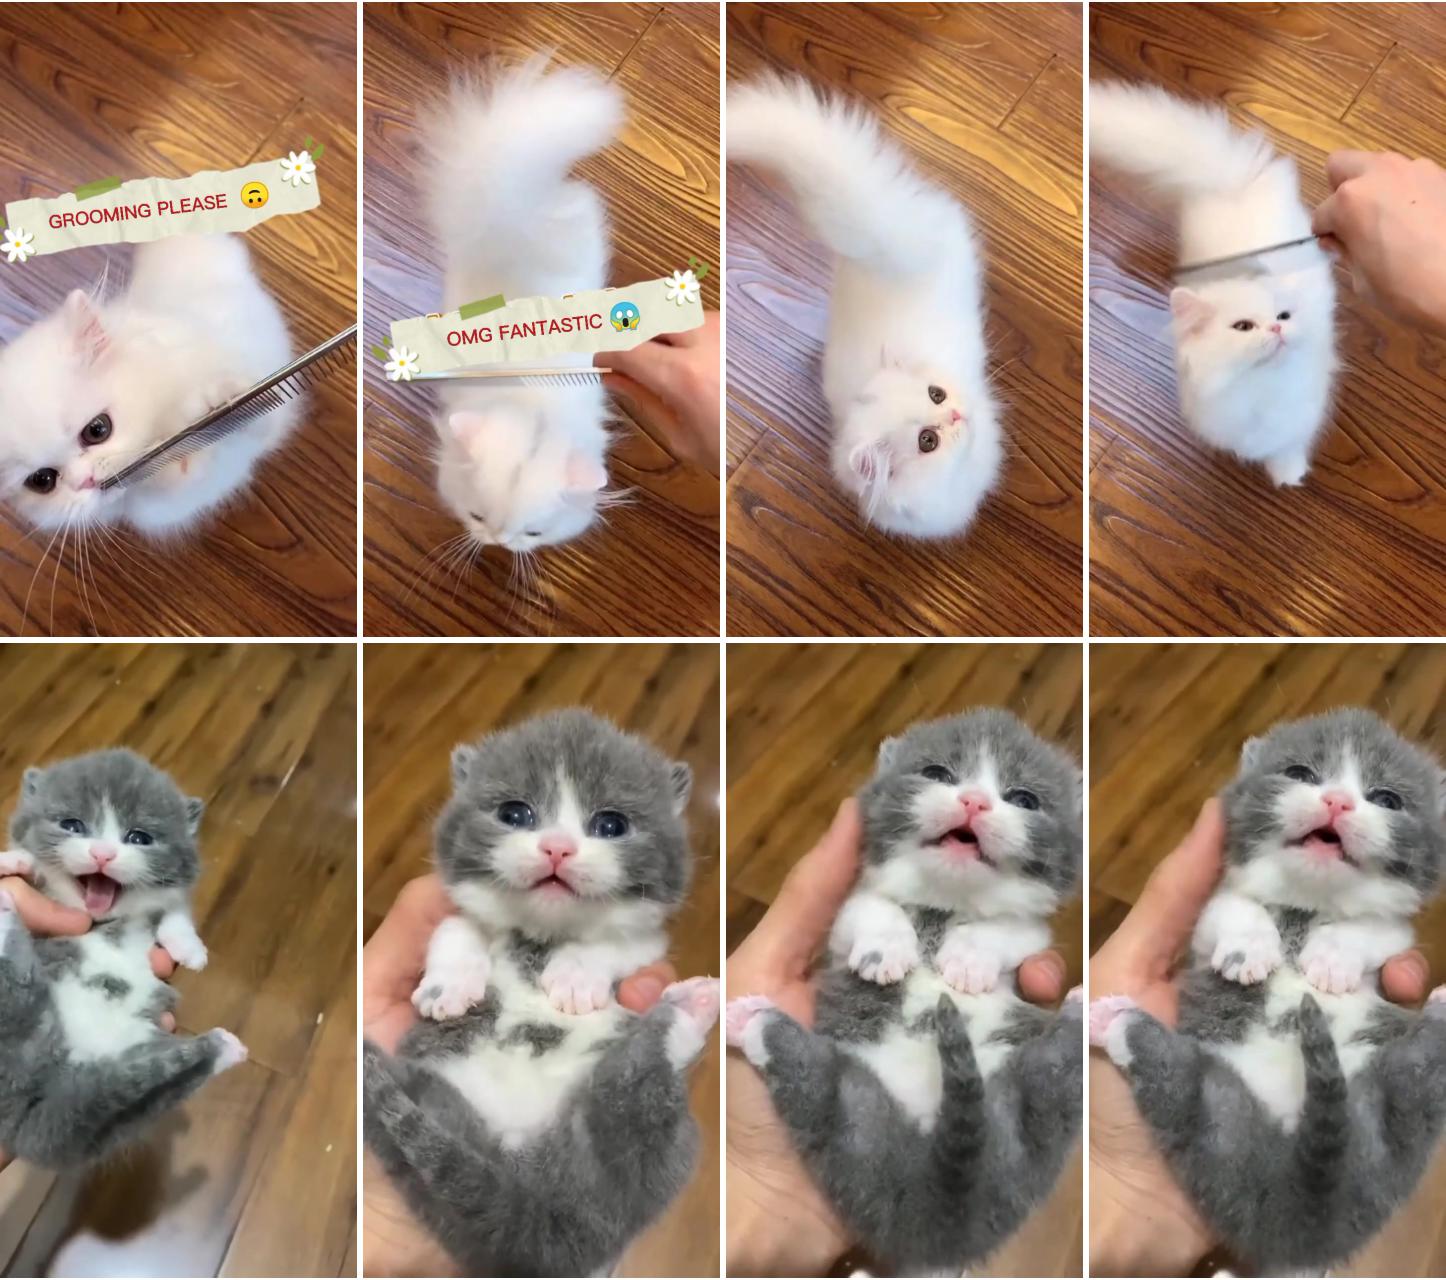 Cute cat video 3; baby cat video